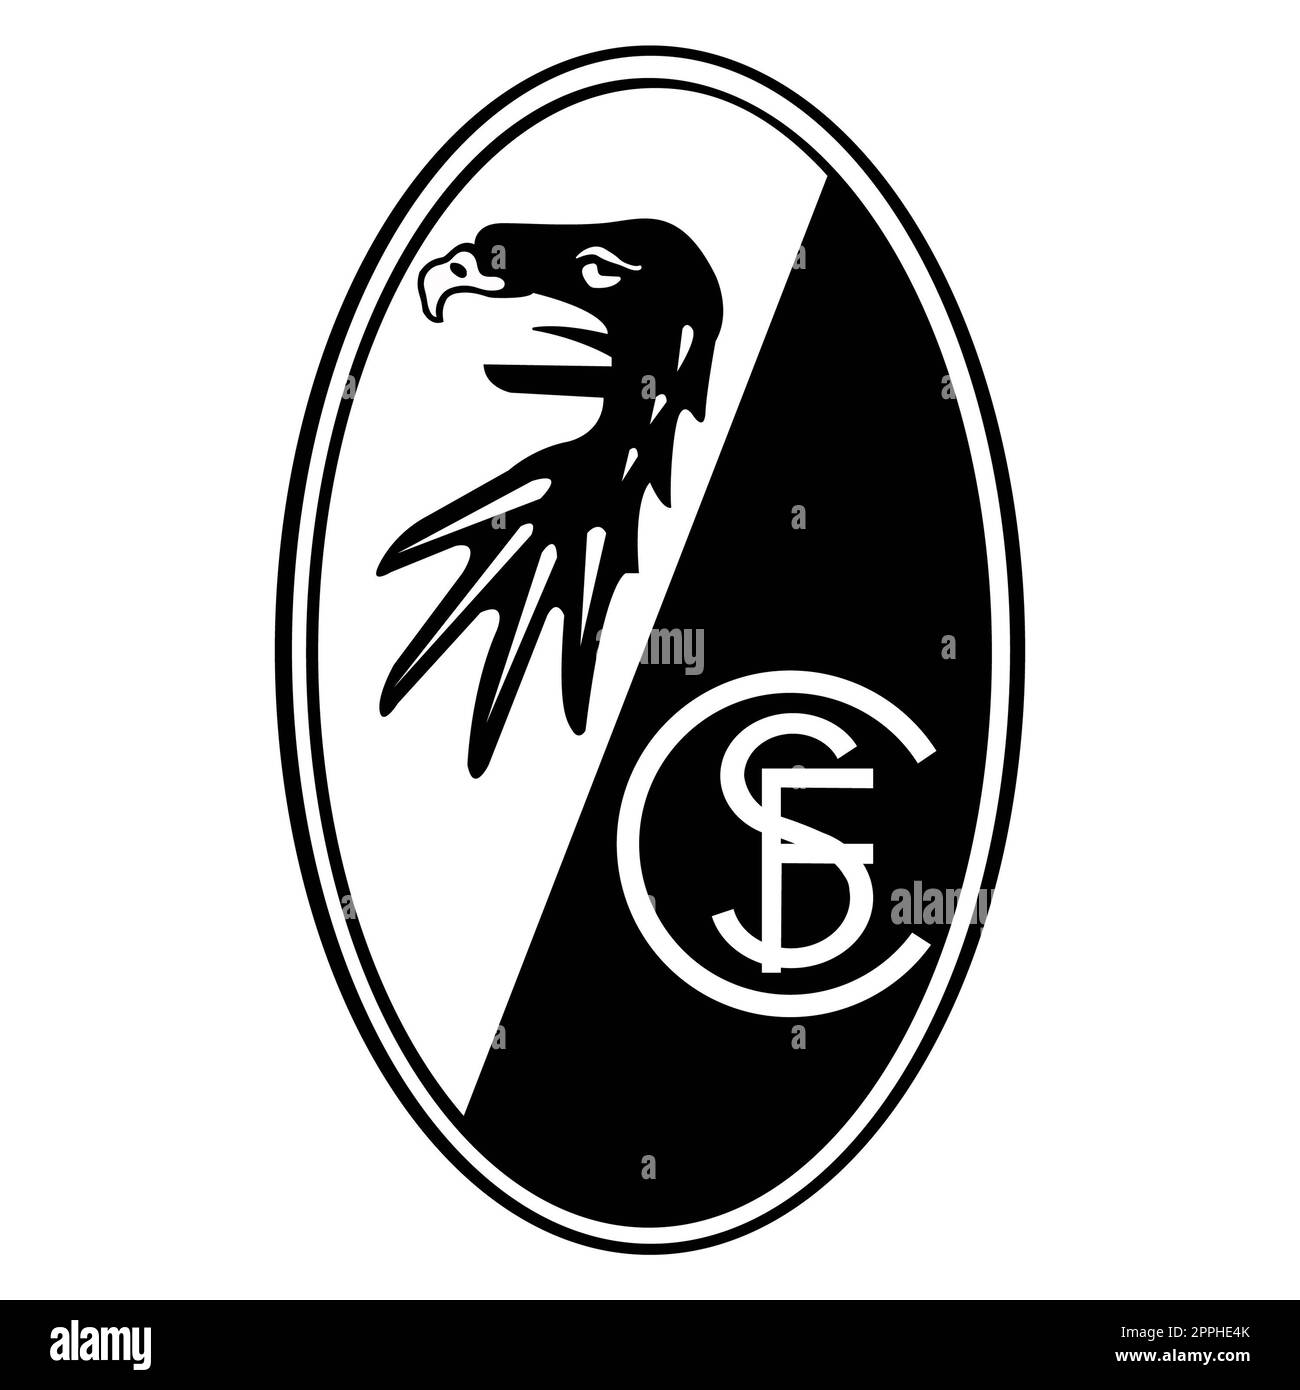 Francoforte sul meno, Germania - 10.23.2022 Logo della squadra di calcio tedesca Friburgo. Immagine vettoriale. Foto Stock